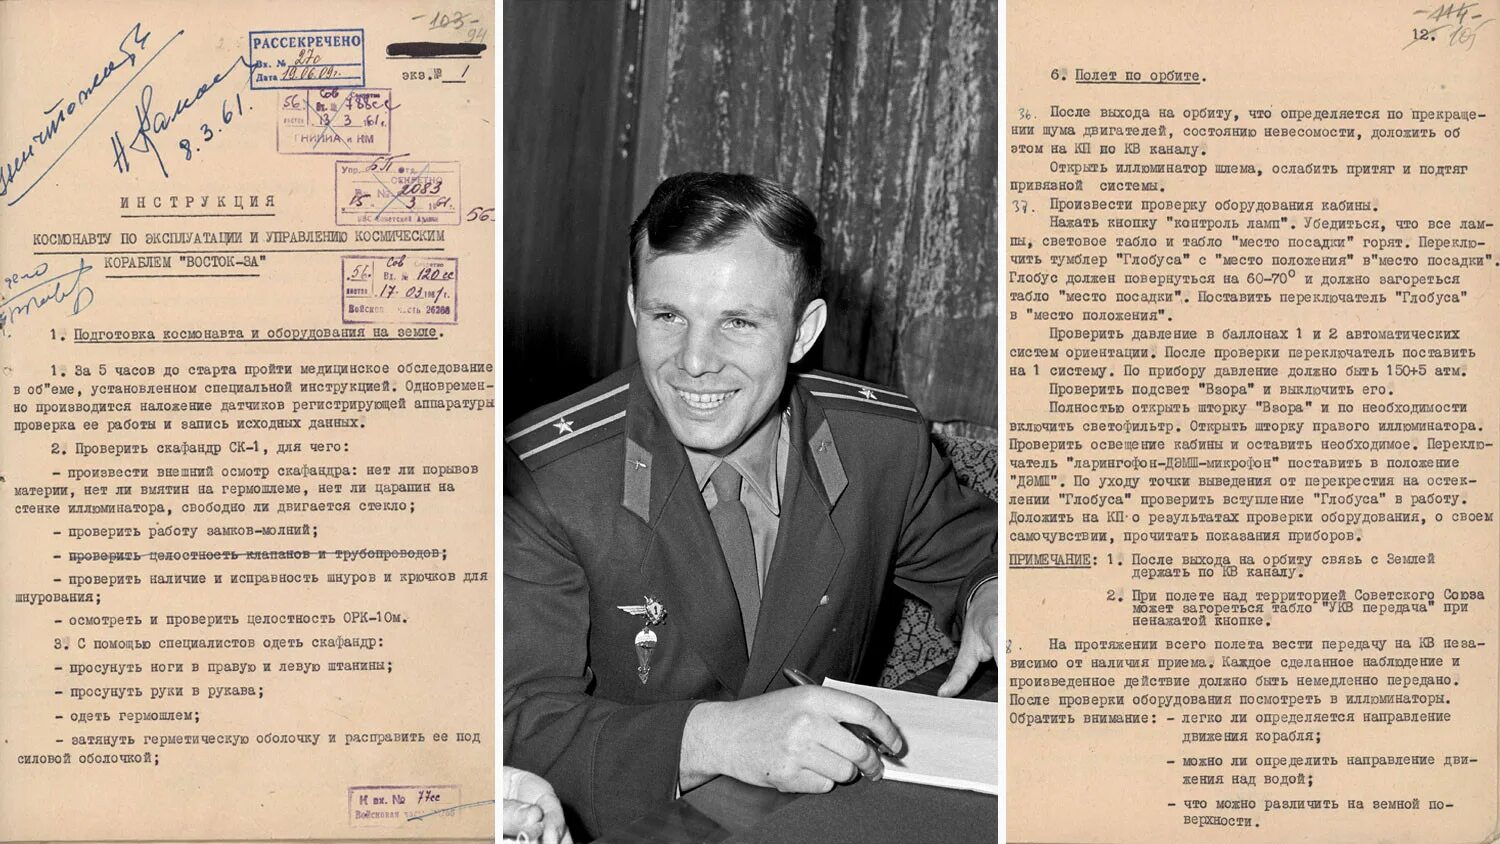 Какую награду получил гагарин сразу после приземления. Газеты 1961 года о первом полете в космос. 1961 Год полет в космос Гагарина. Гагарин полет в космос 1961 газеты.